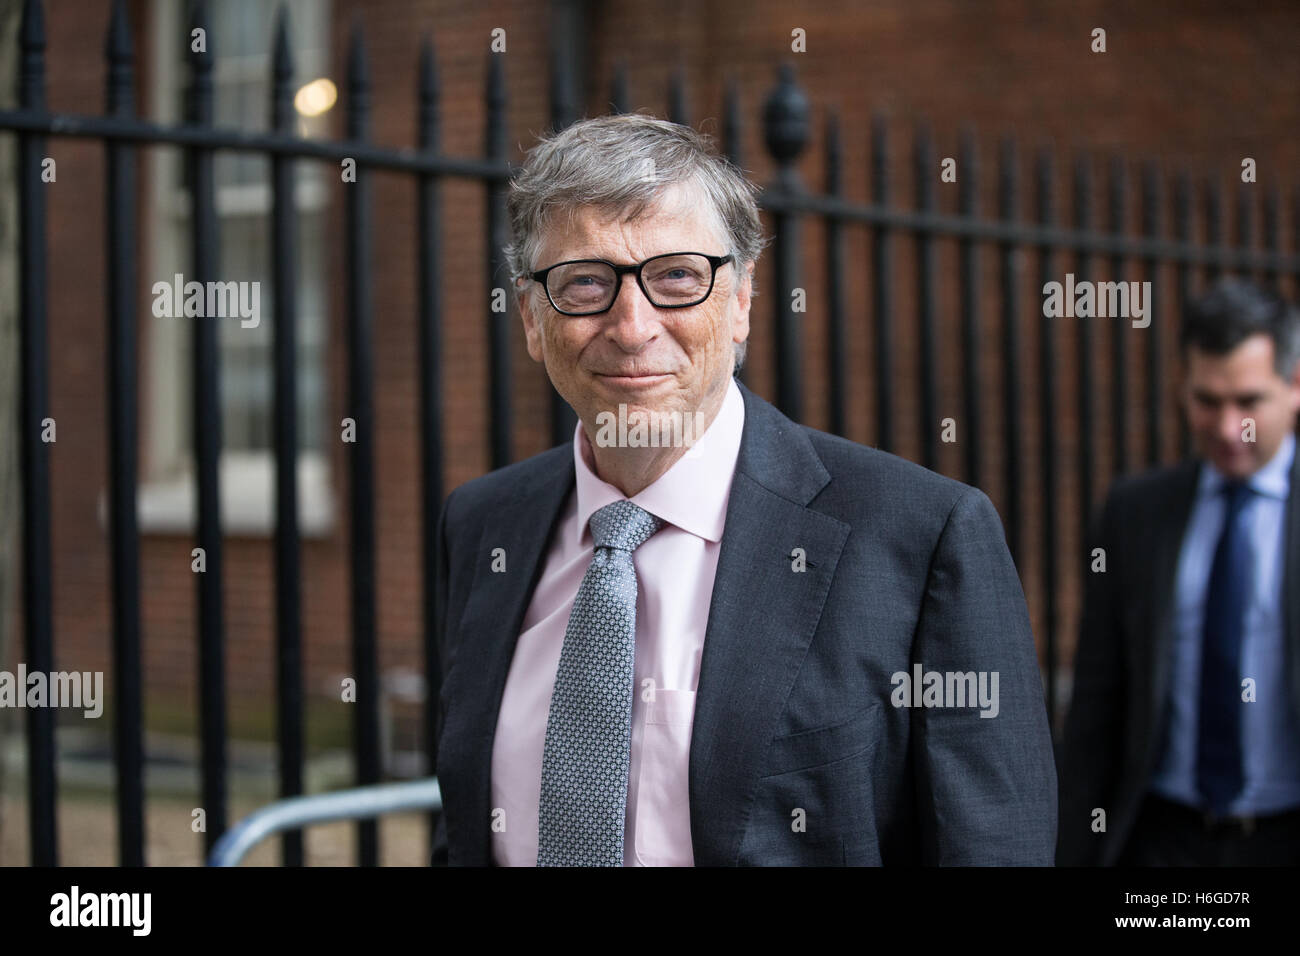 Bill Gates, Multi-Millionär, Philanthrop und Gründer von Microsoft, lohnt sich ein Besuch Nummer 11 Downing Street, London, UK Stockfoto